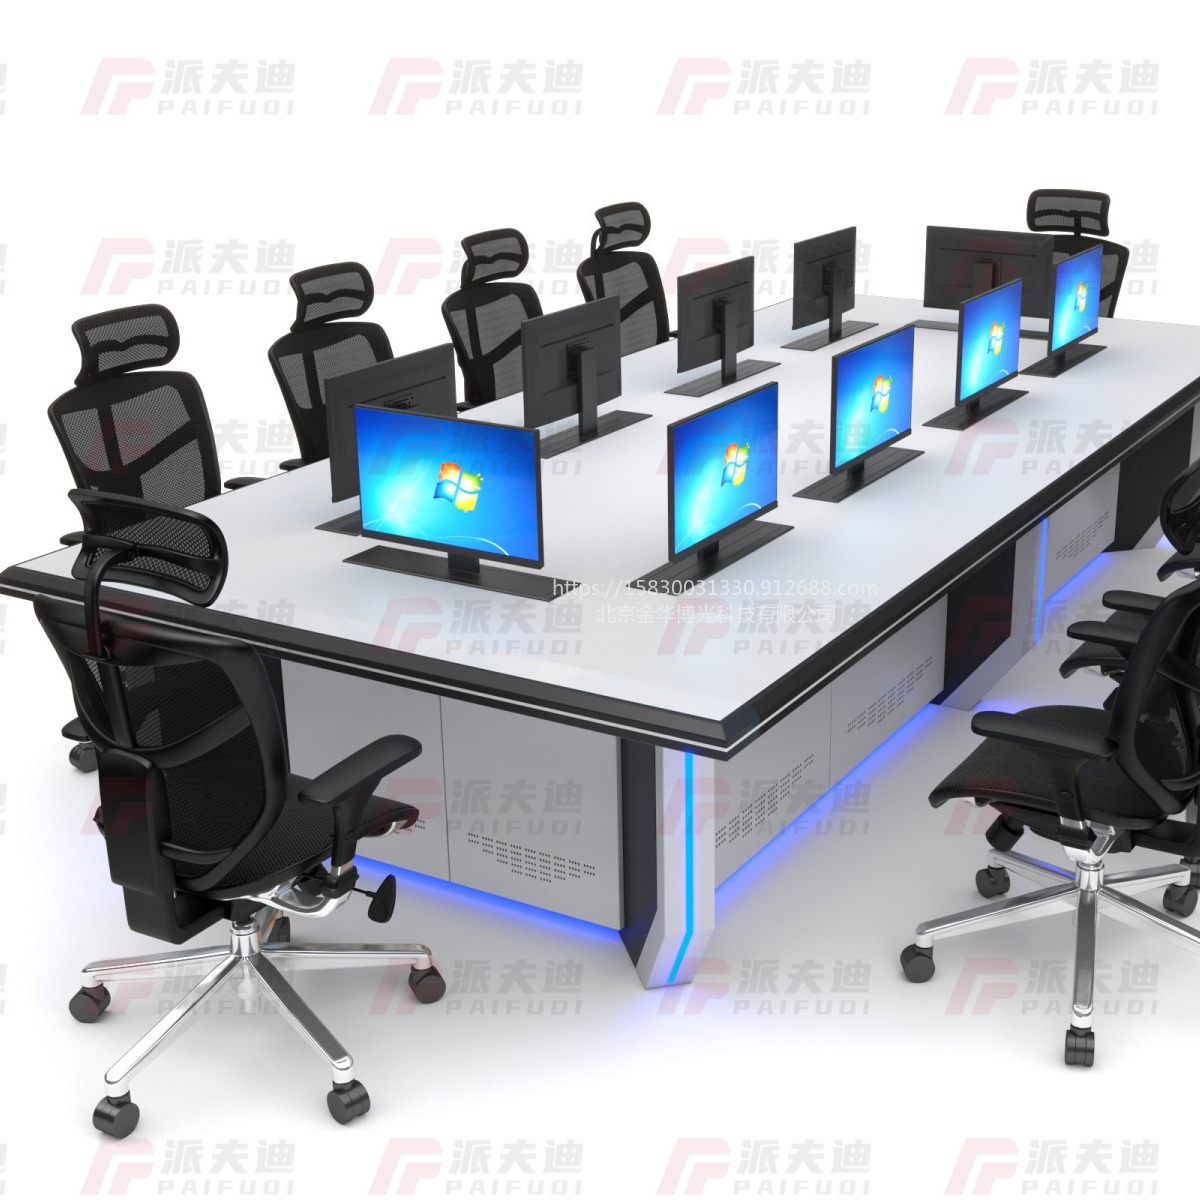 派夫迪调度中心工作台监控桌监控平台弧形现代控制台定制厂家